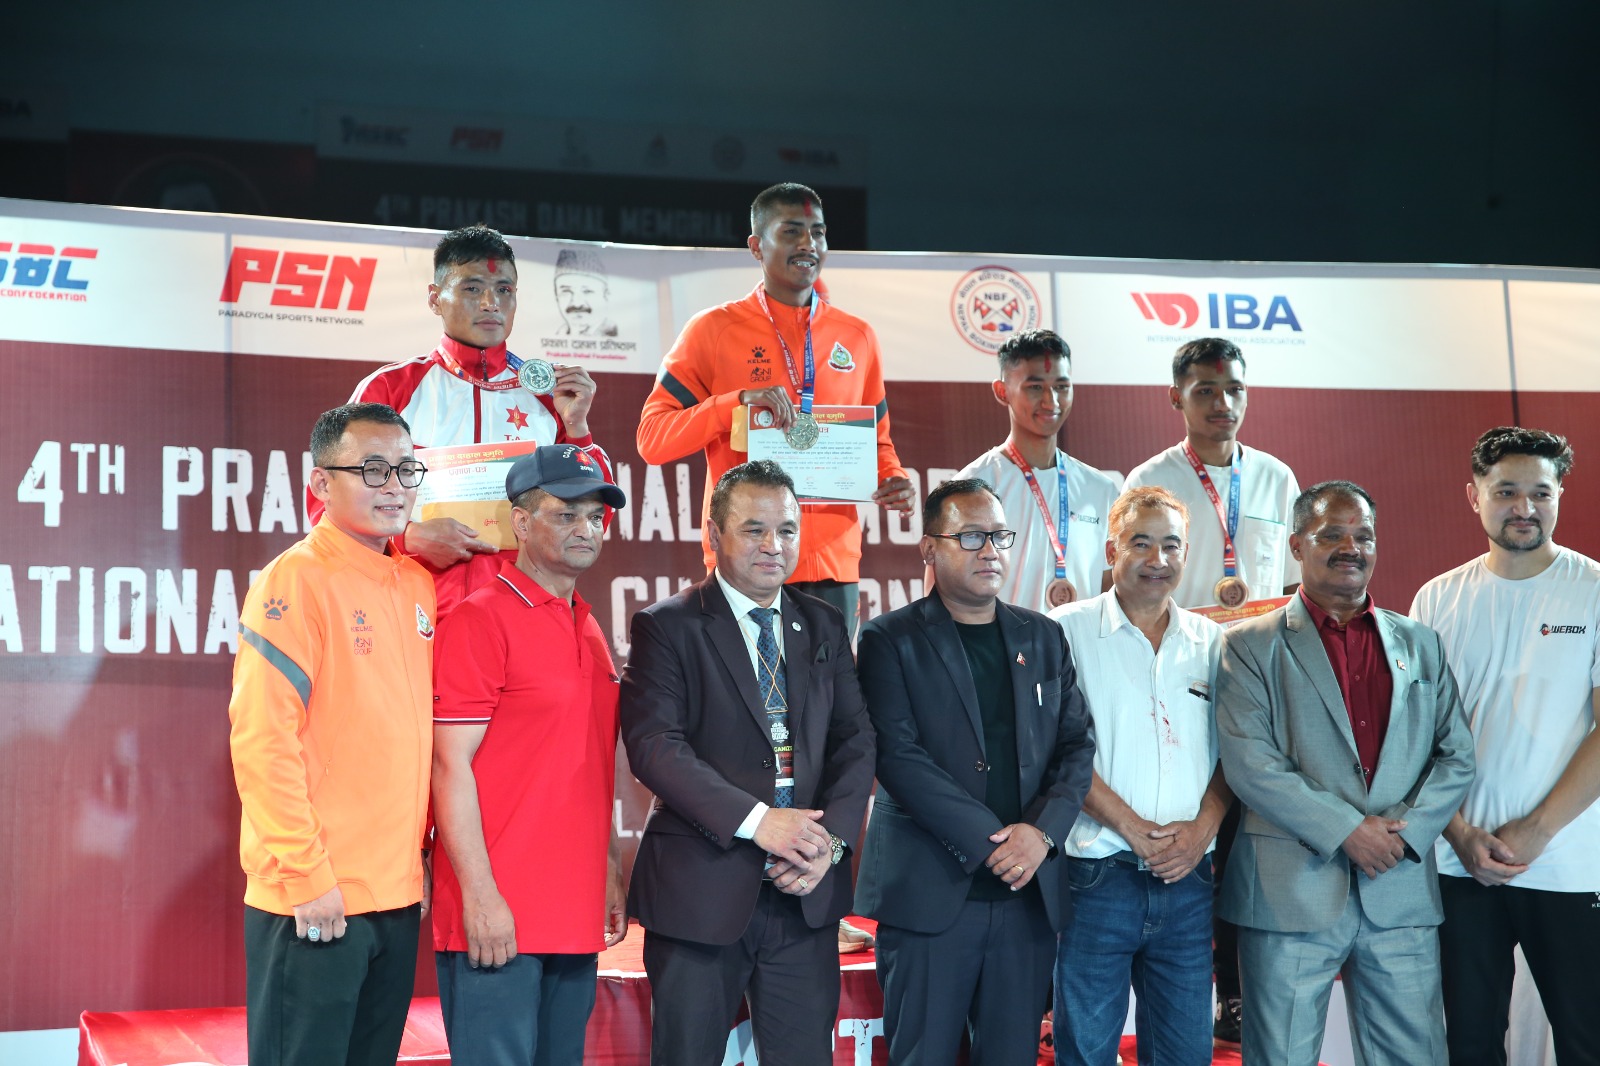 Lal Prasad Upreti e Chandra Bahadur Thapa venceram as principais finais masculinas no Torneio Memorial Nepal Prakash Dahal